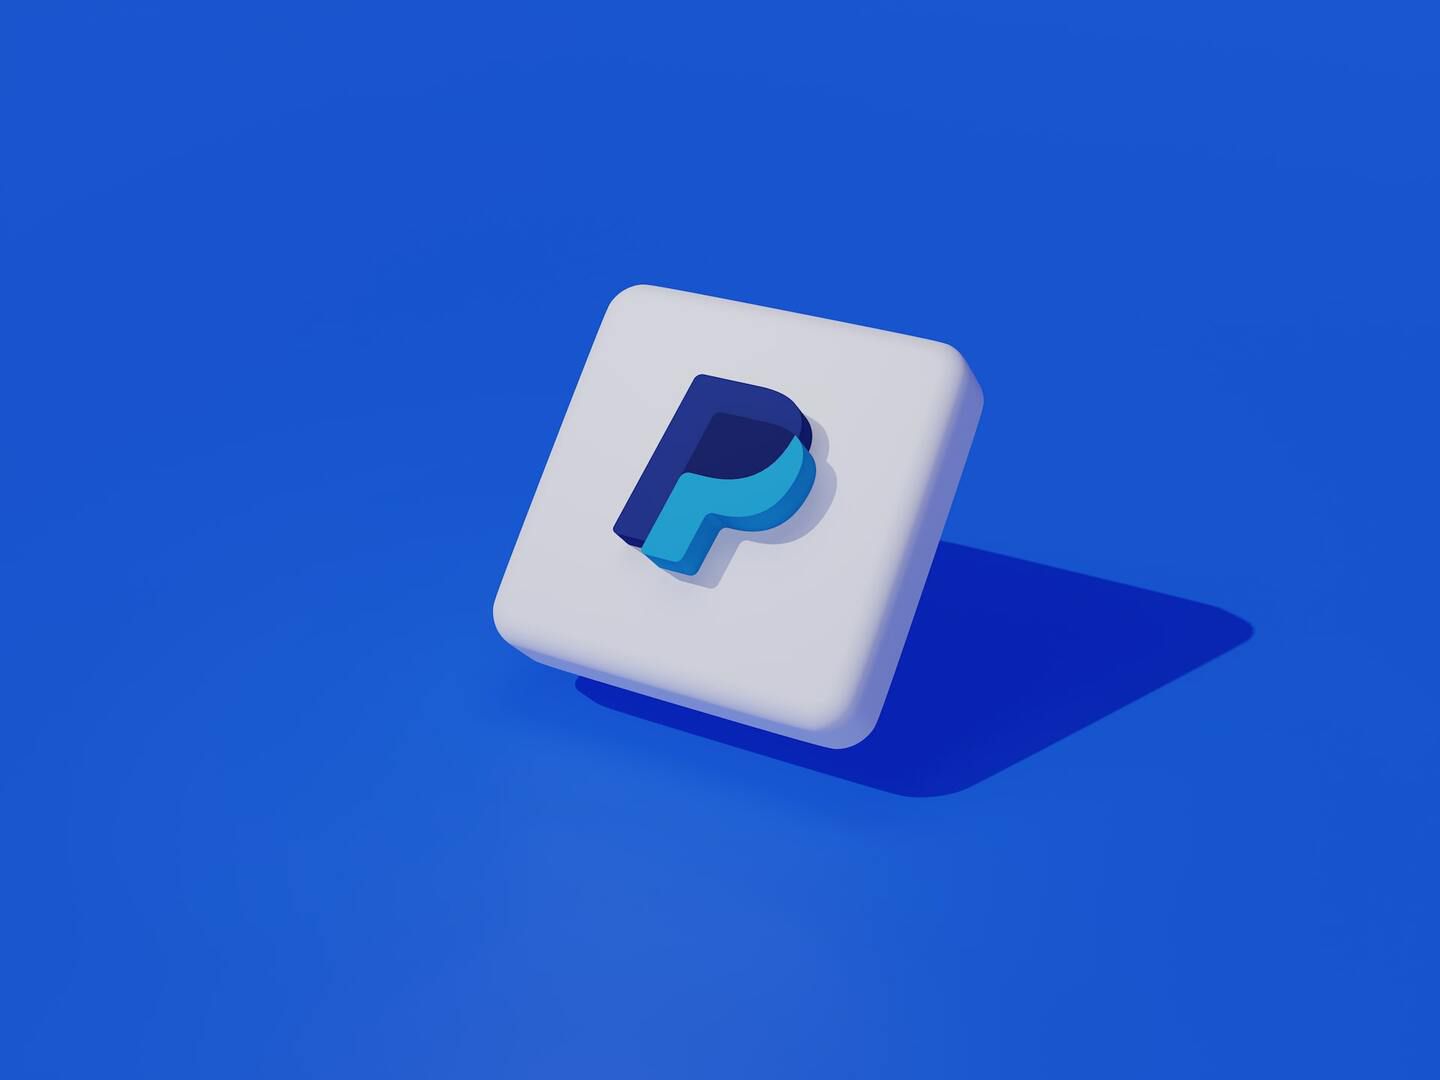 Kooperation mit MetaMask: PayPal rüstet für Kryptowährungen auf